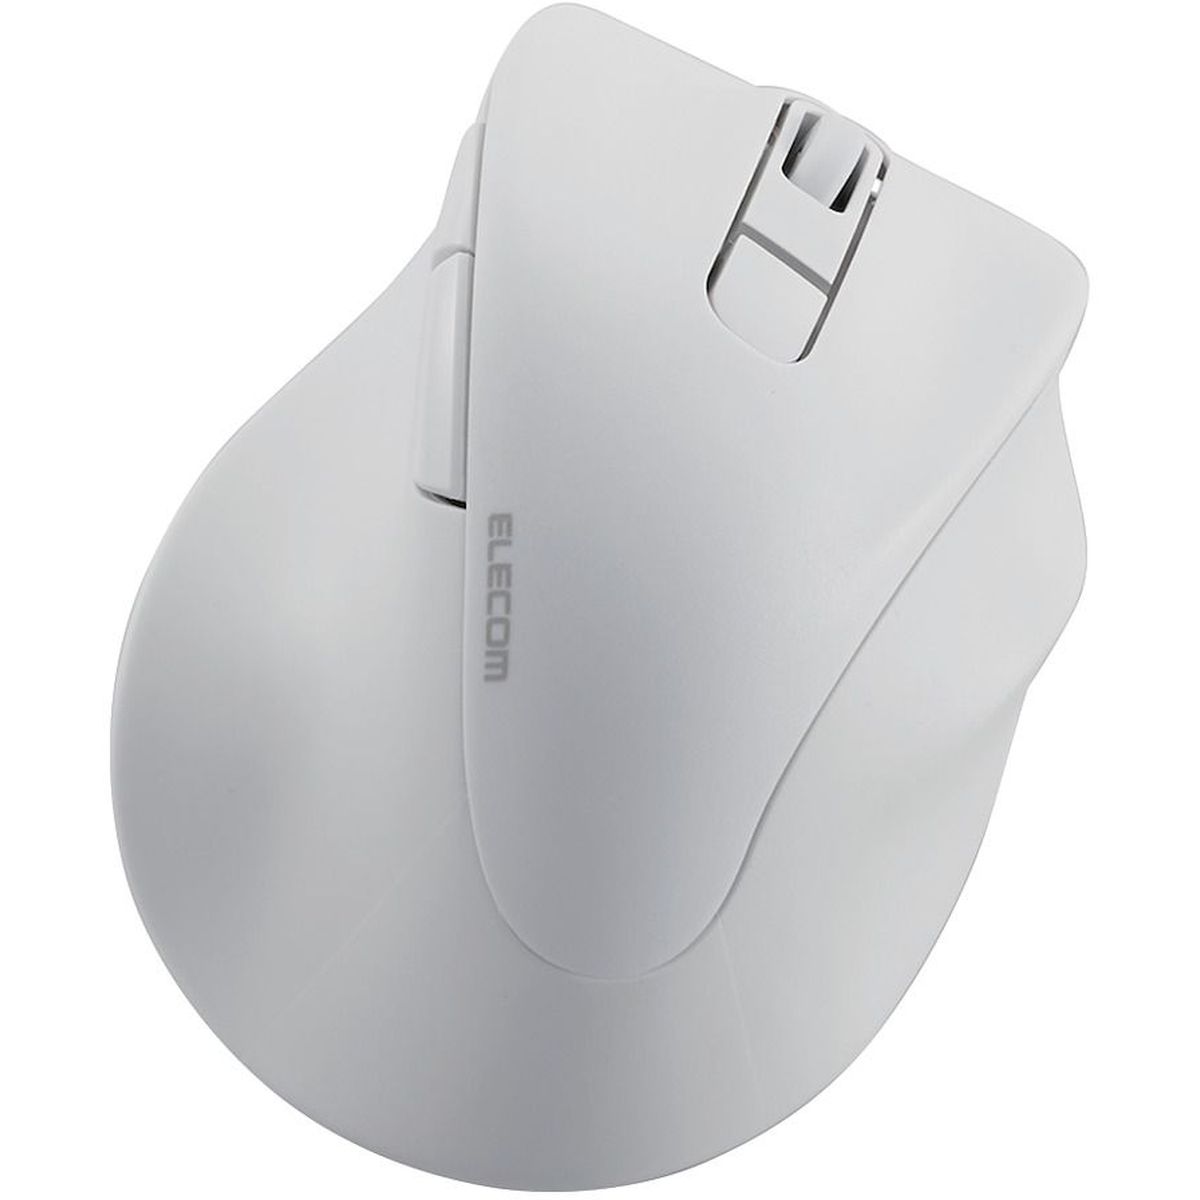 マウス/右手専用/Mサイズ/Bluetooth/5ボタン/ホワイト